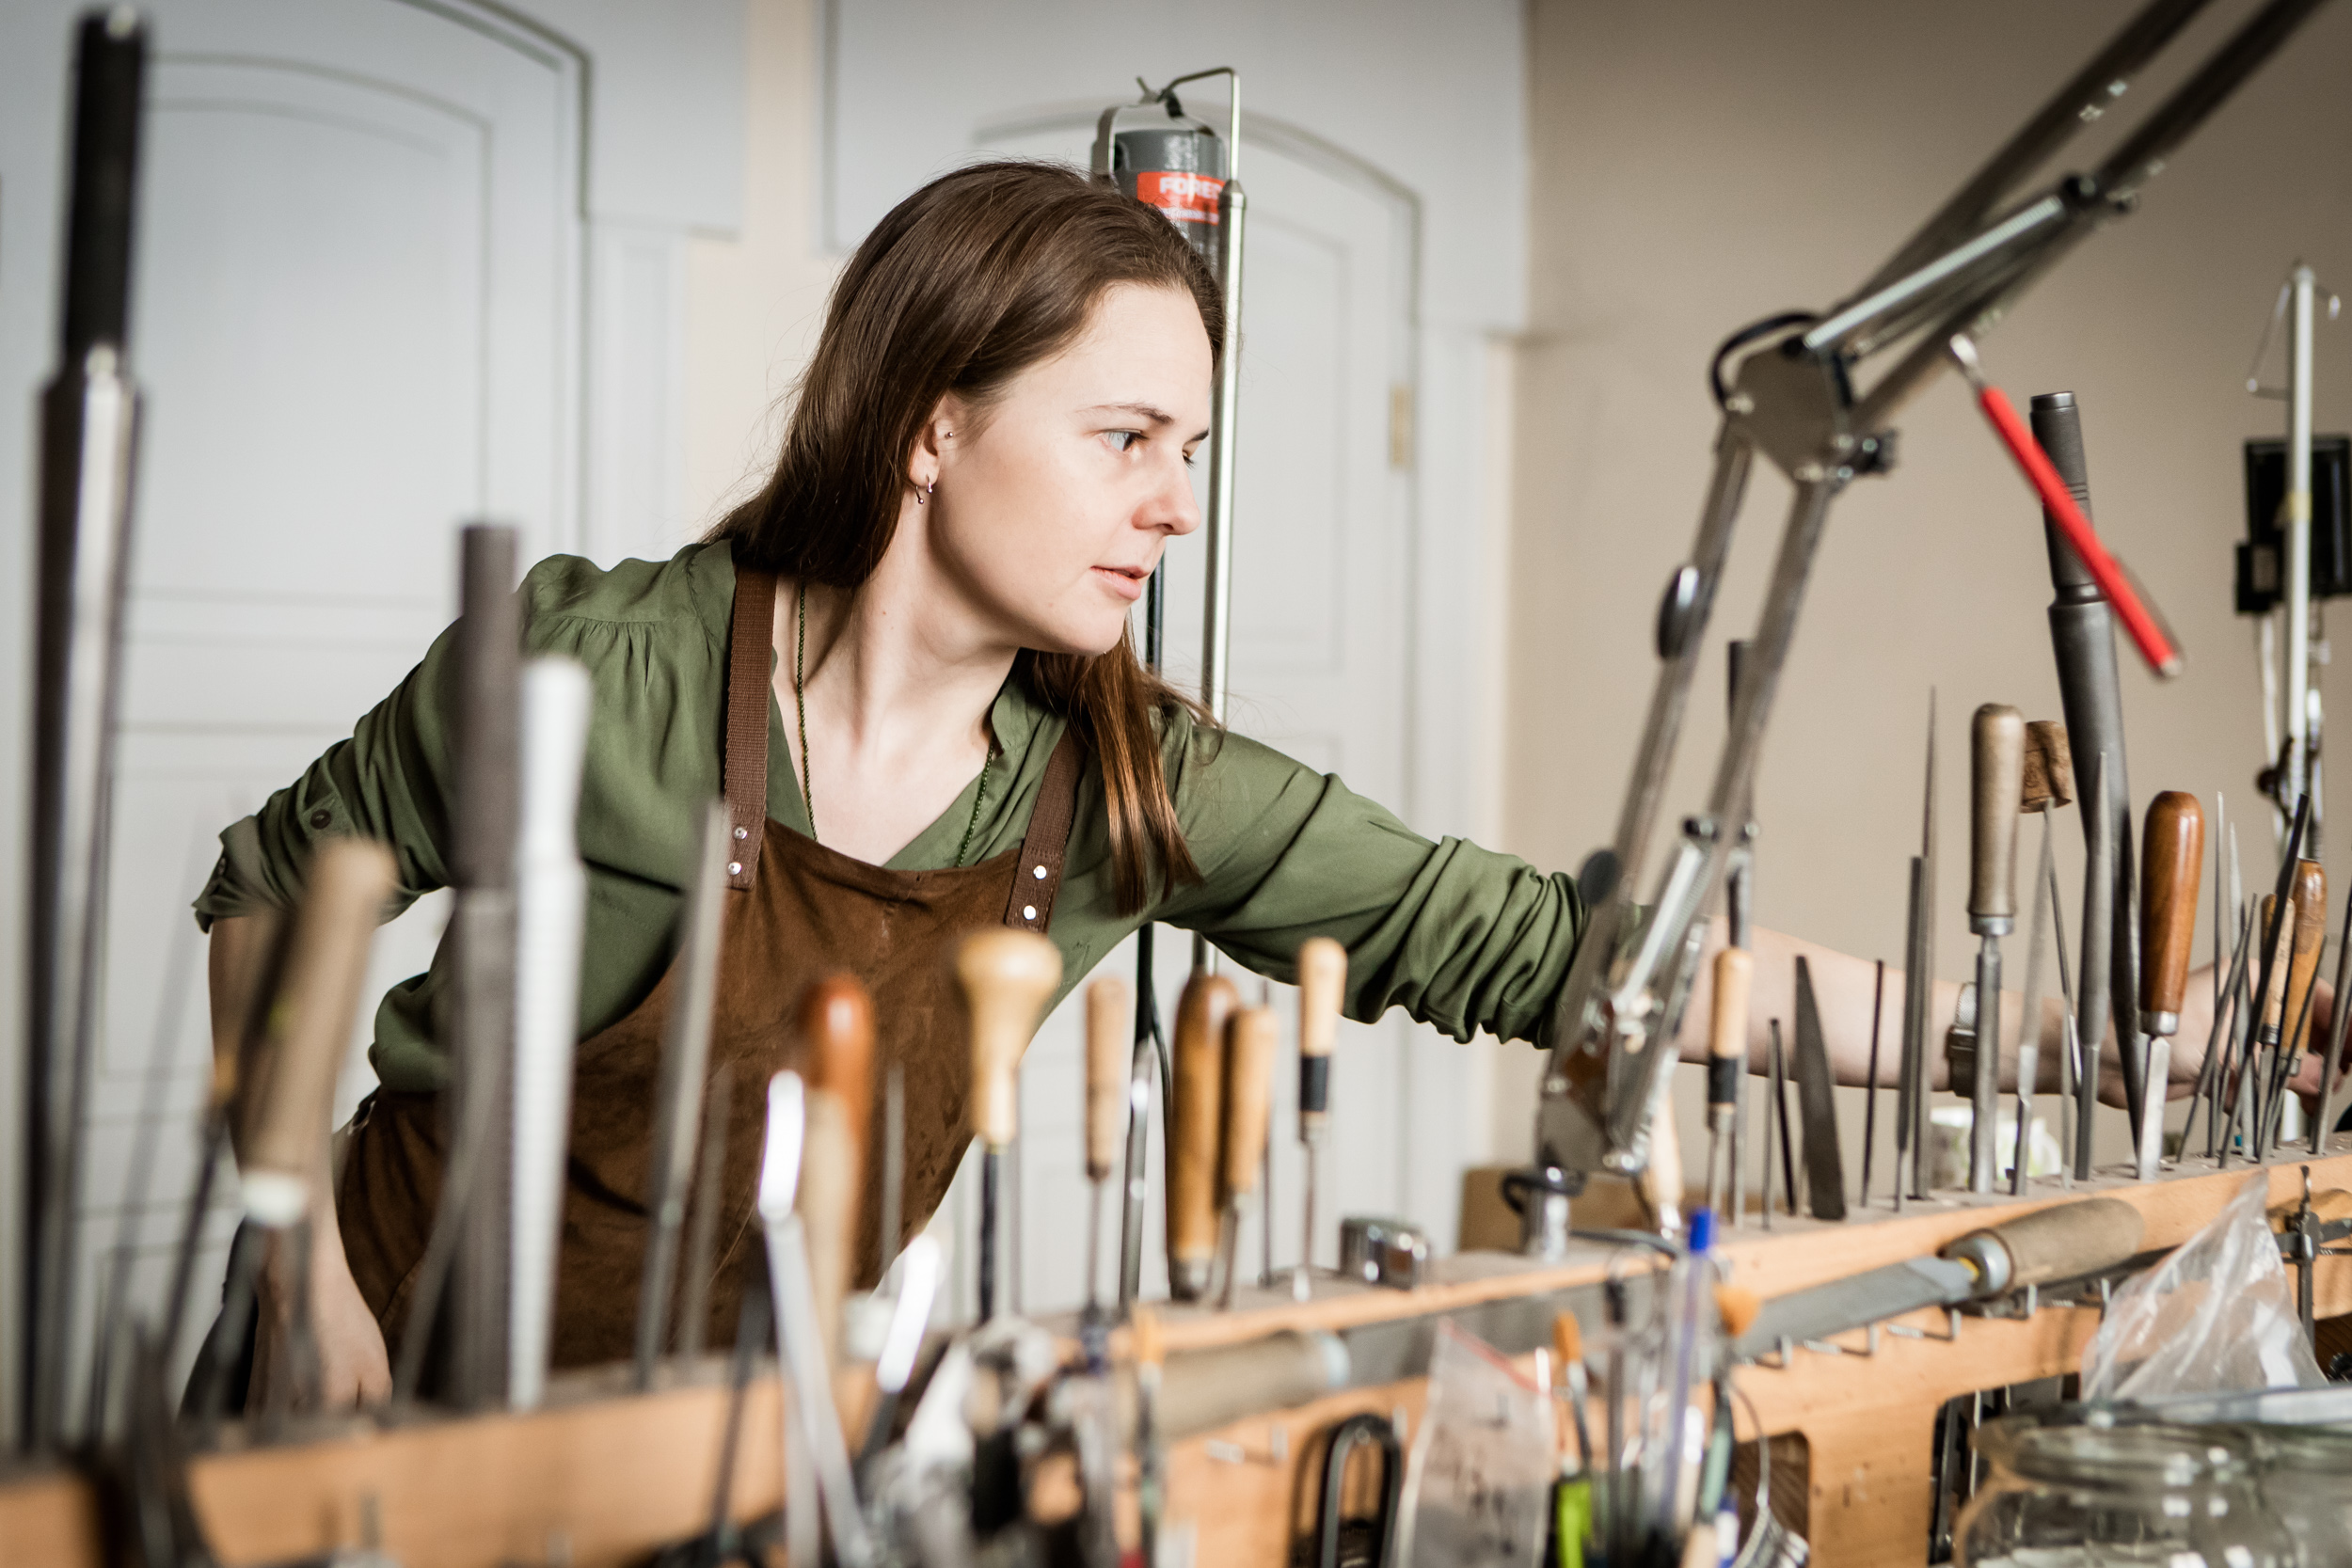 Magda zgromadziła w pracowni wszystkie możliwe narzędzia pomocne w wytwarzaniu jubilerskich cacek.